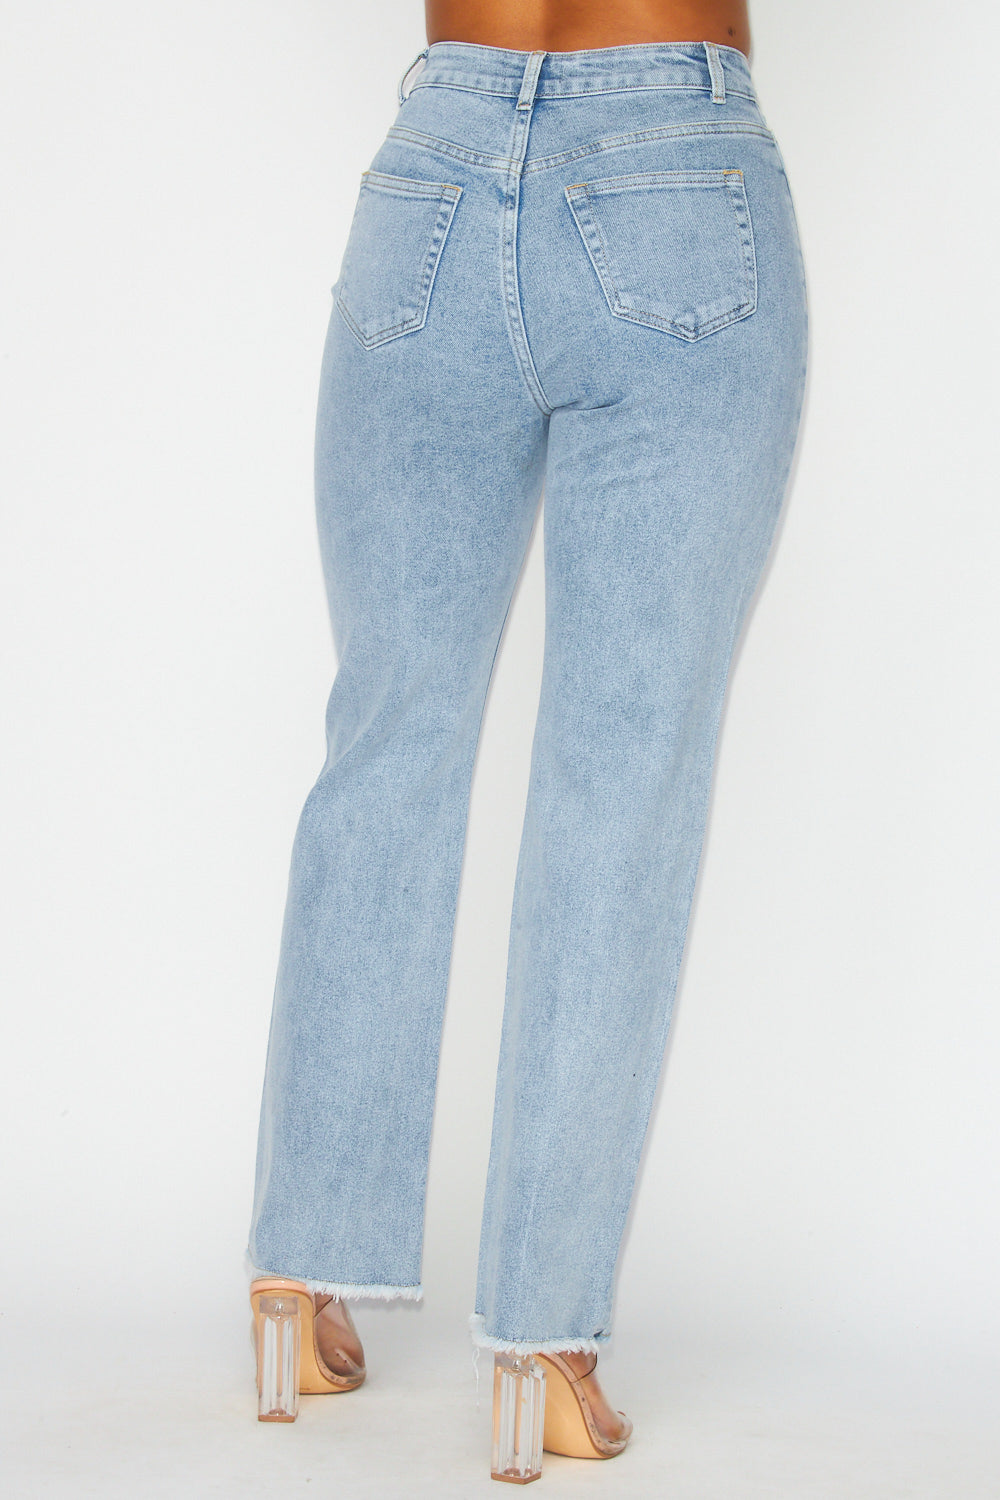 Gina Rhinestone Detail Denim Straight Jean Pants